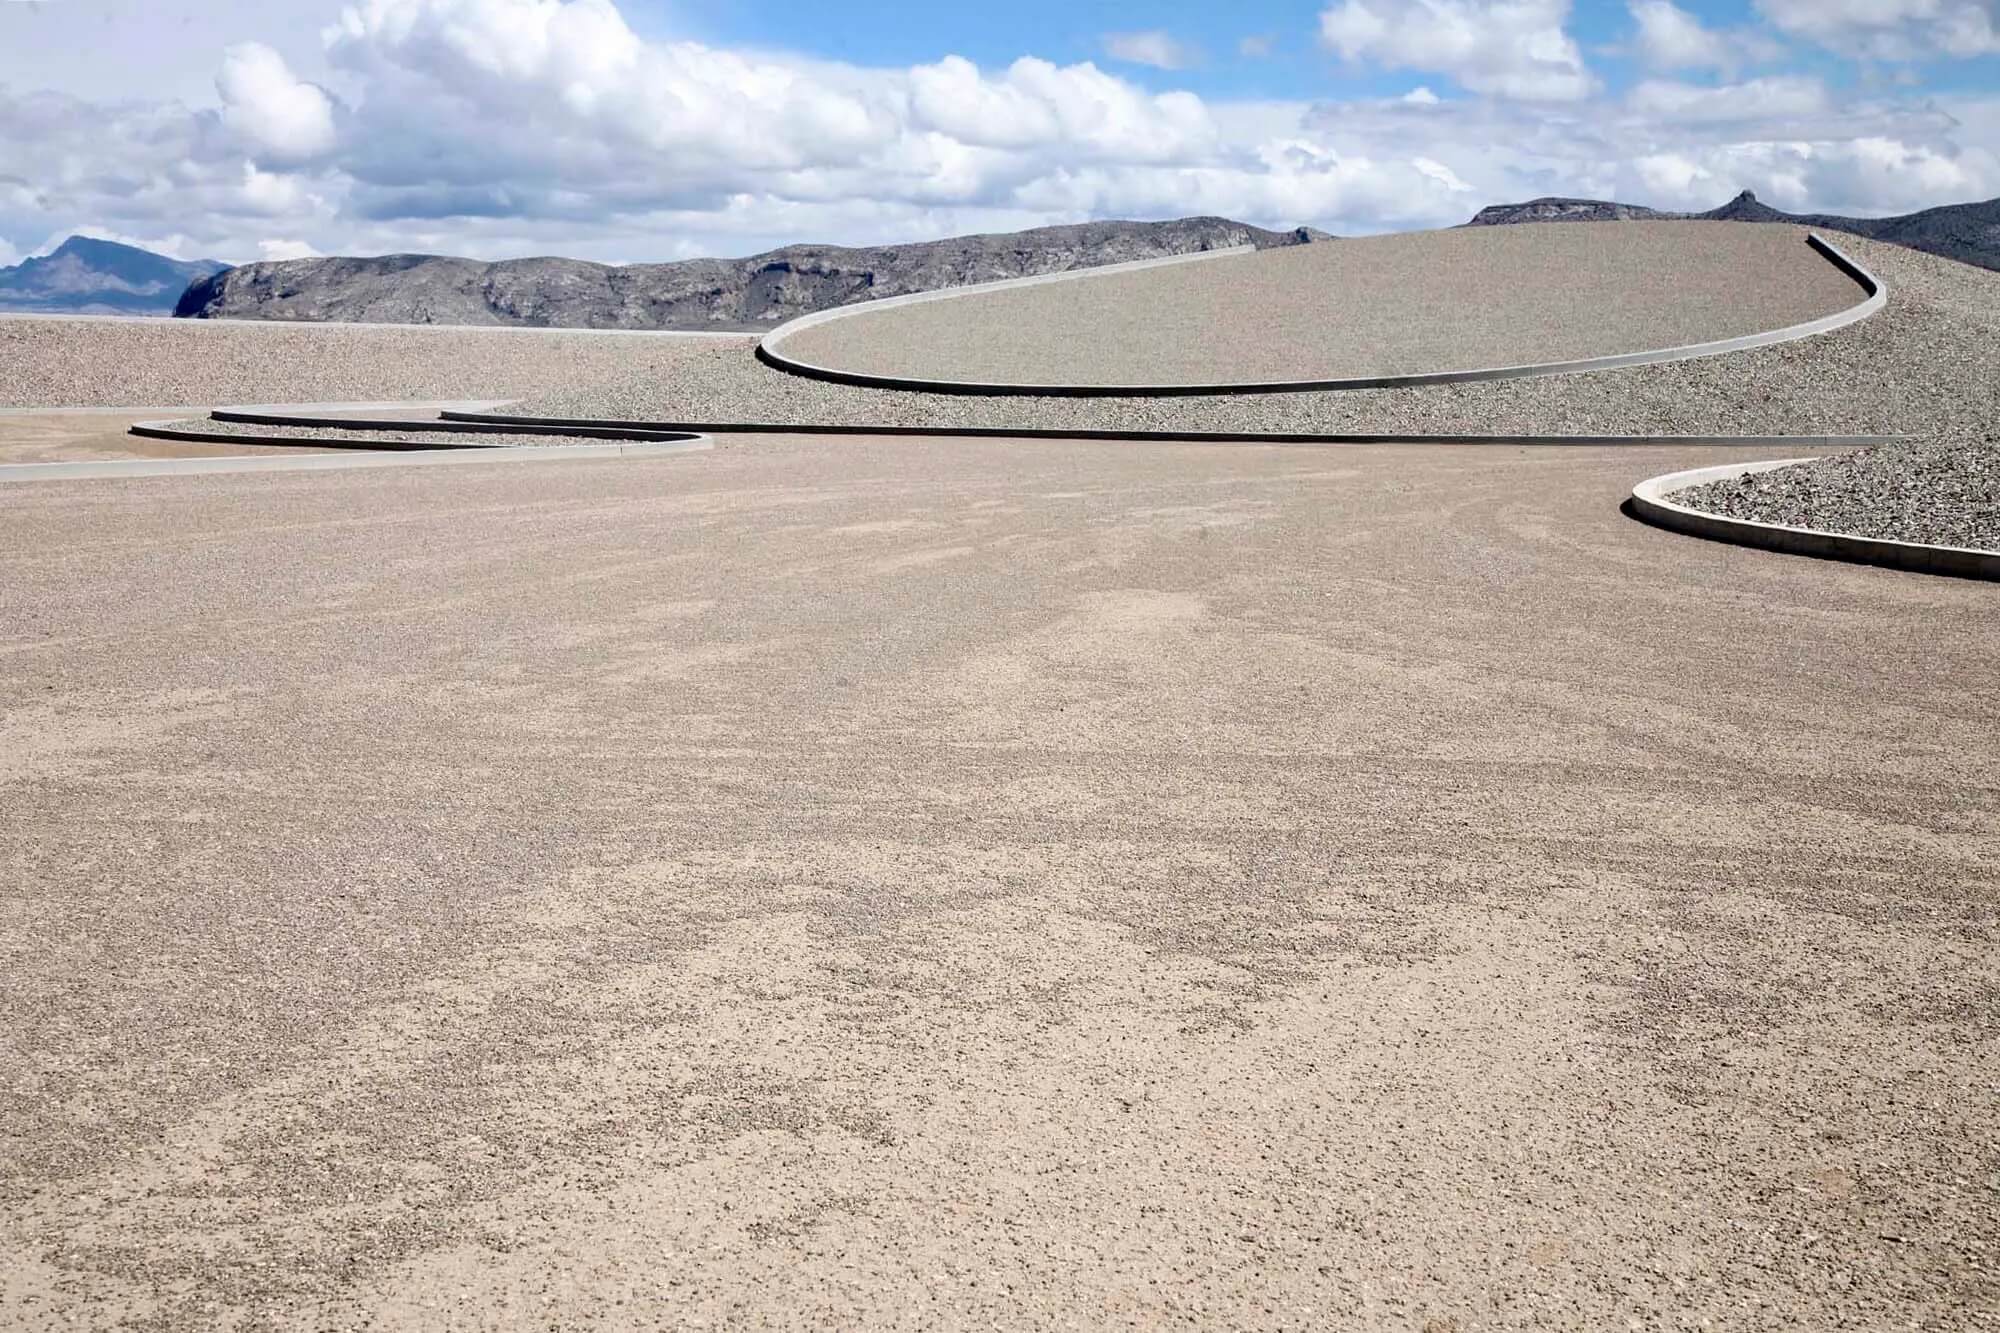 a massive work of land art in the desert